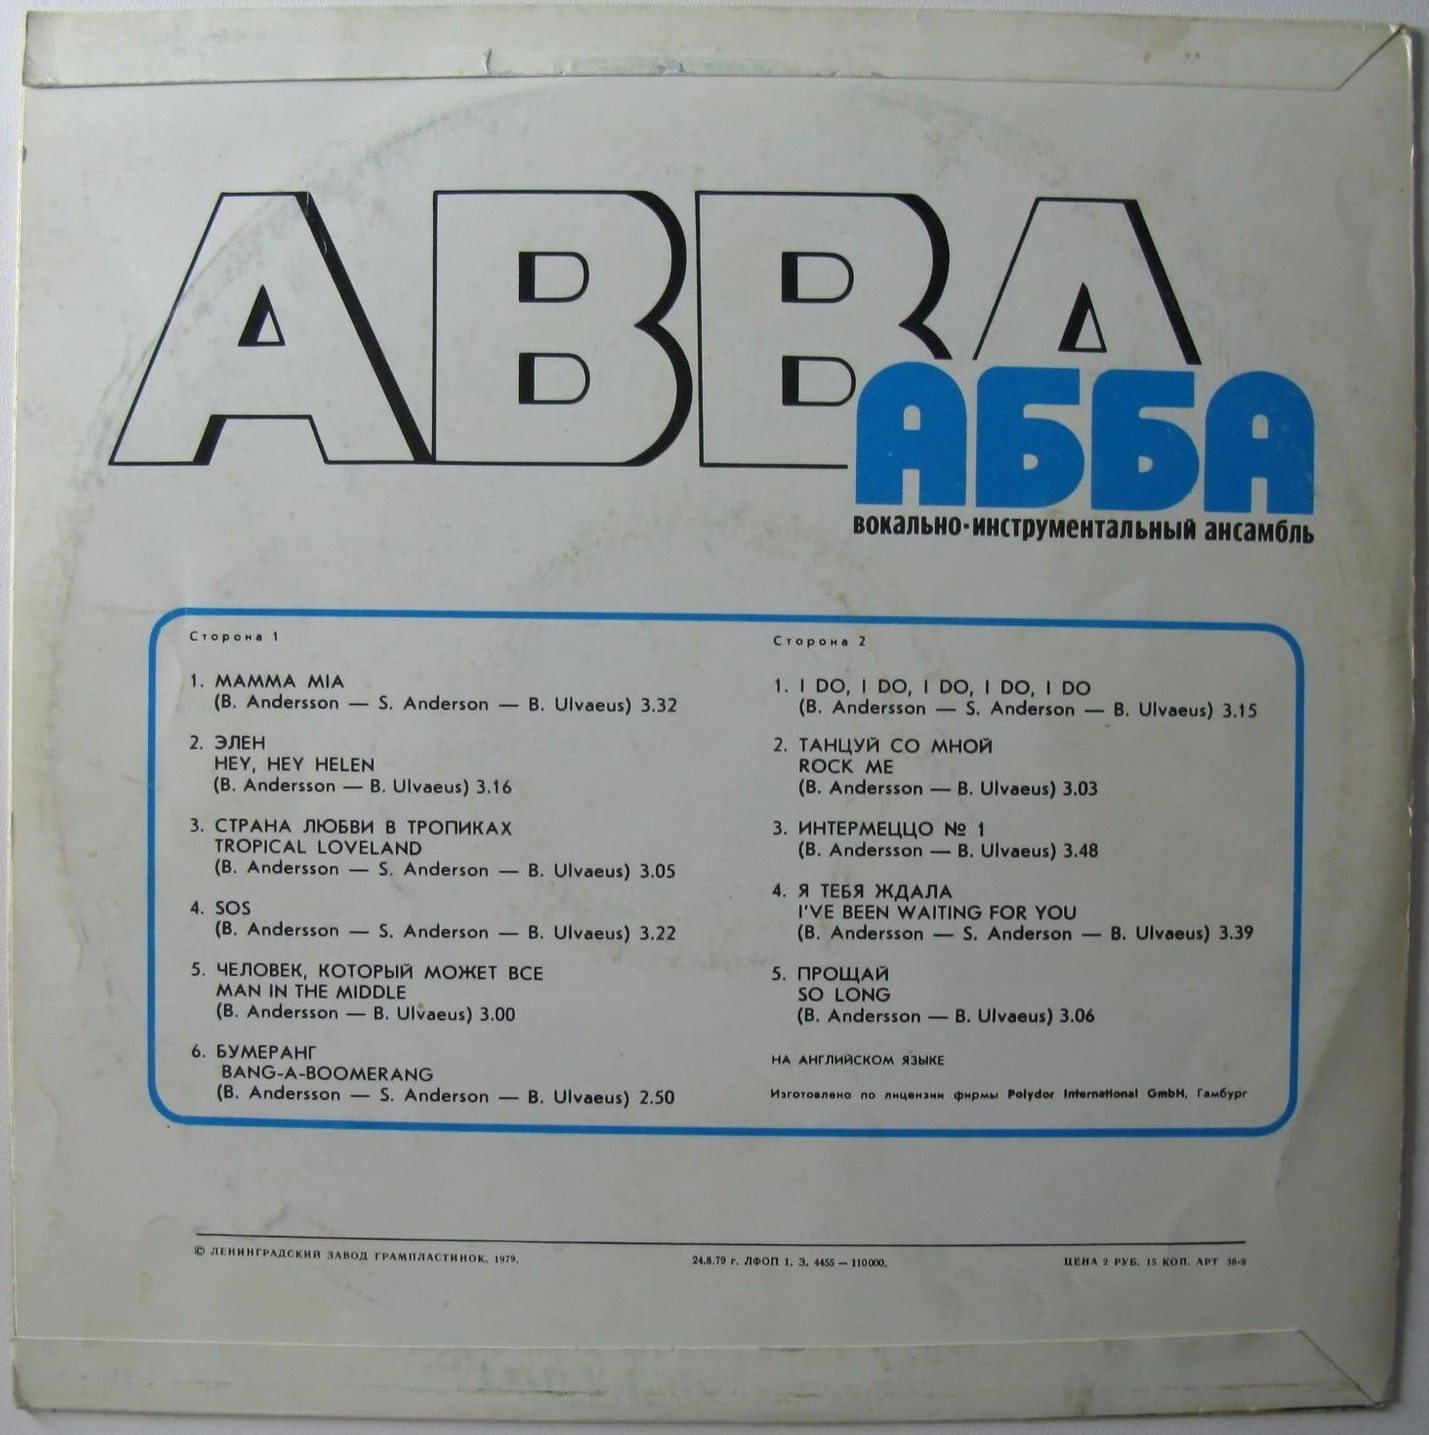 Вокально-инструментальный ансамбль «АББА» (ABBA) — на английском языке